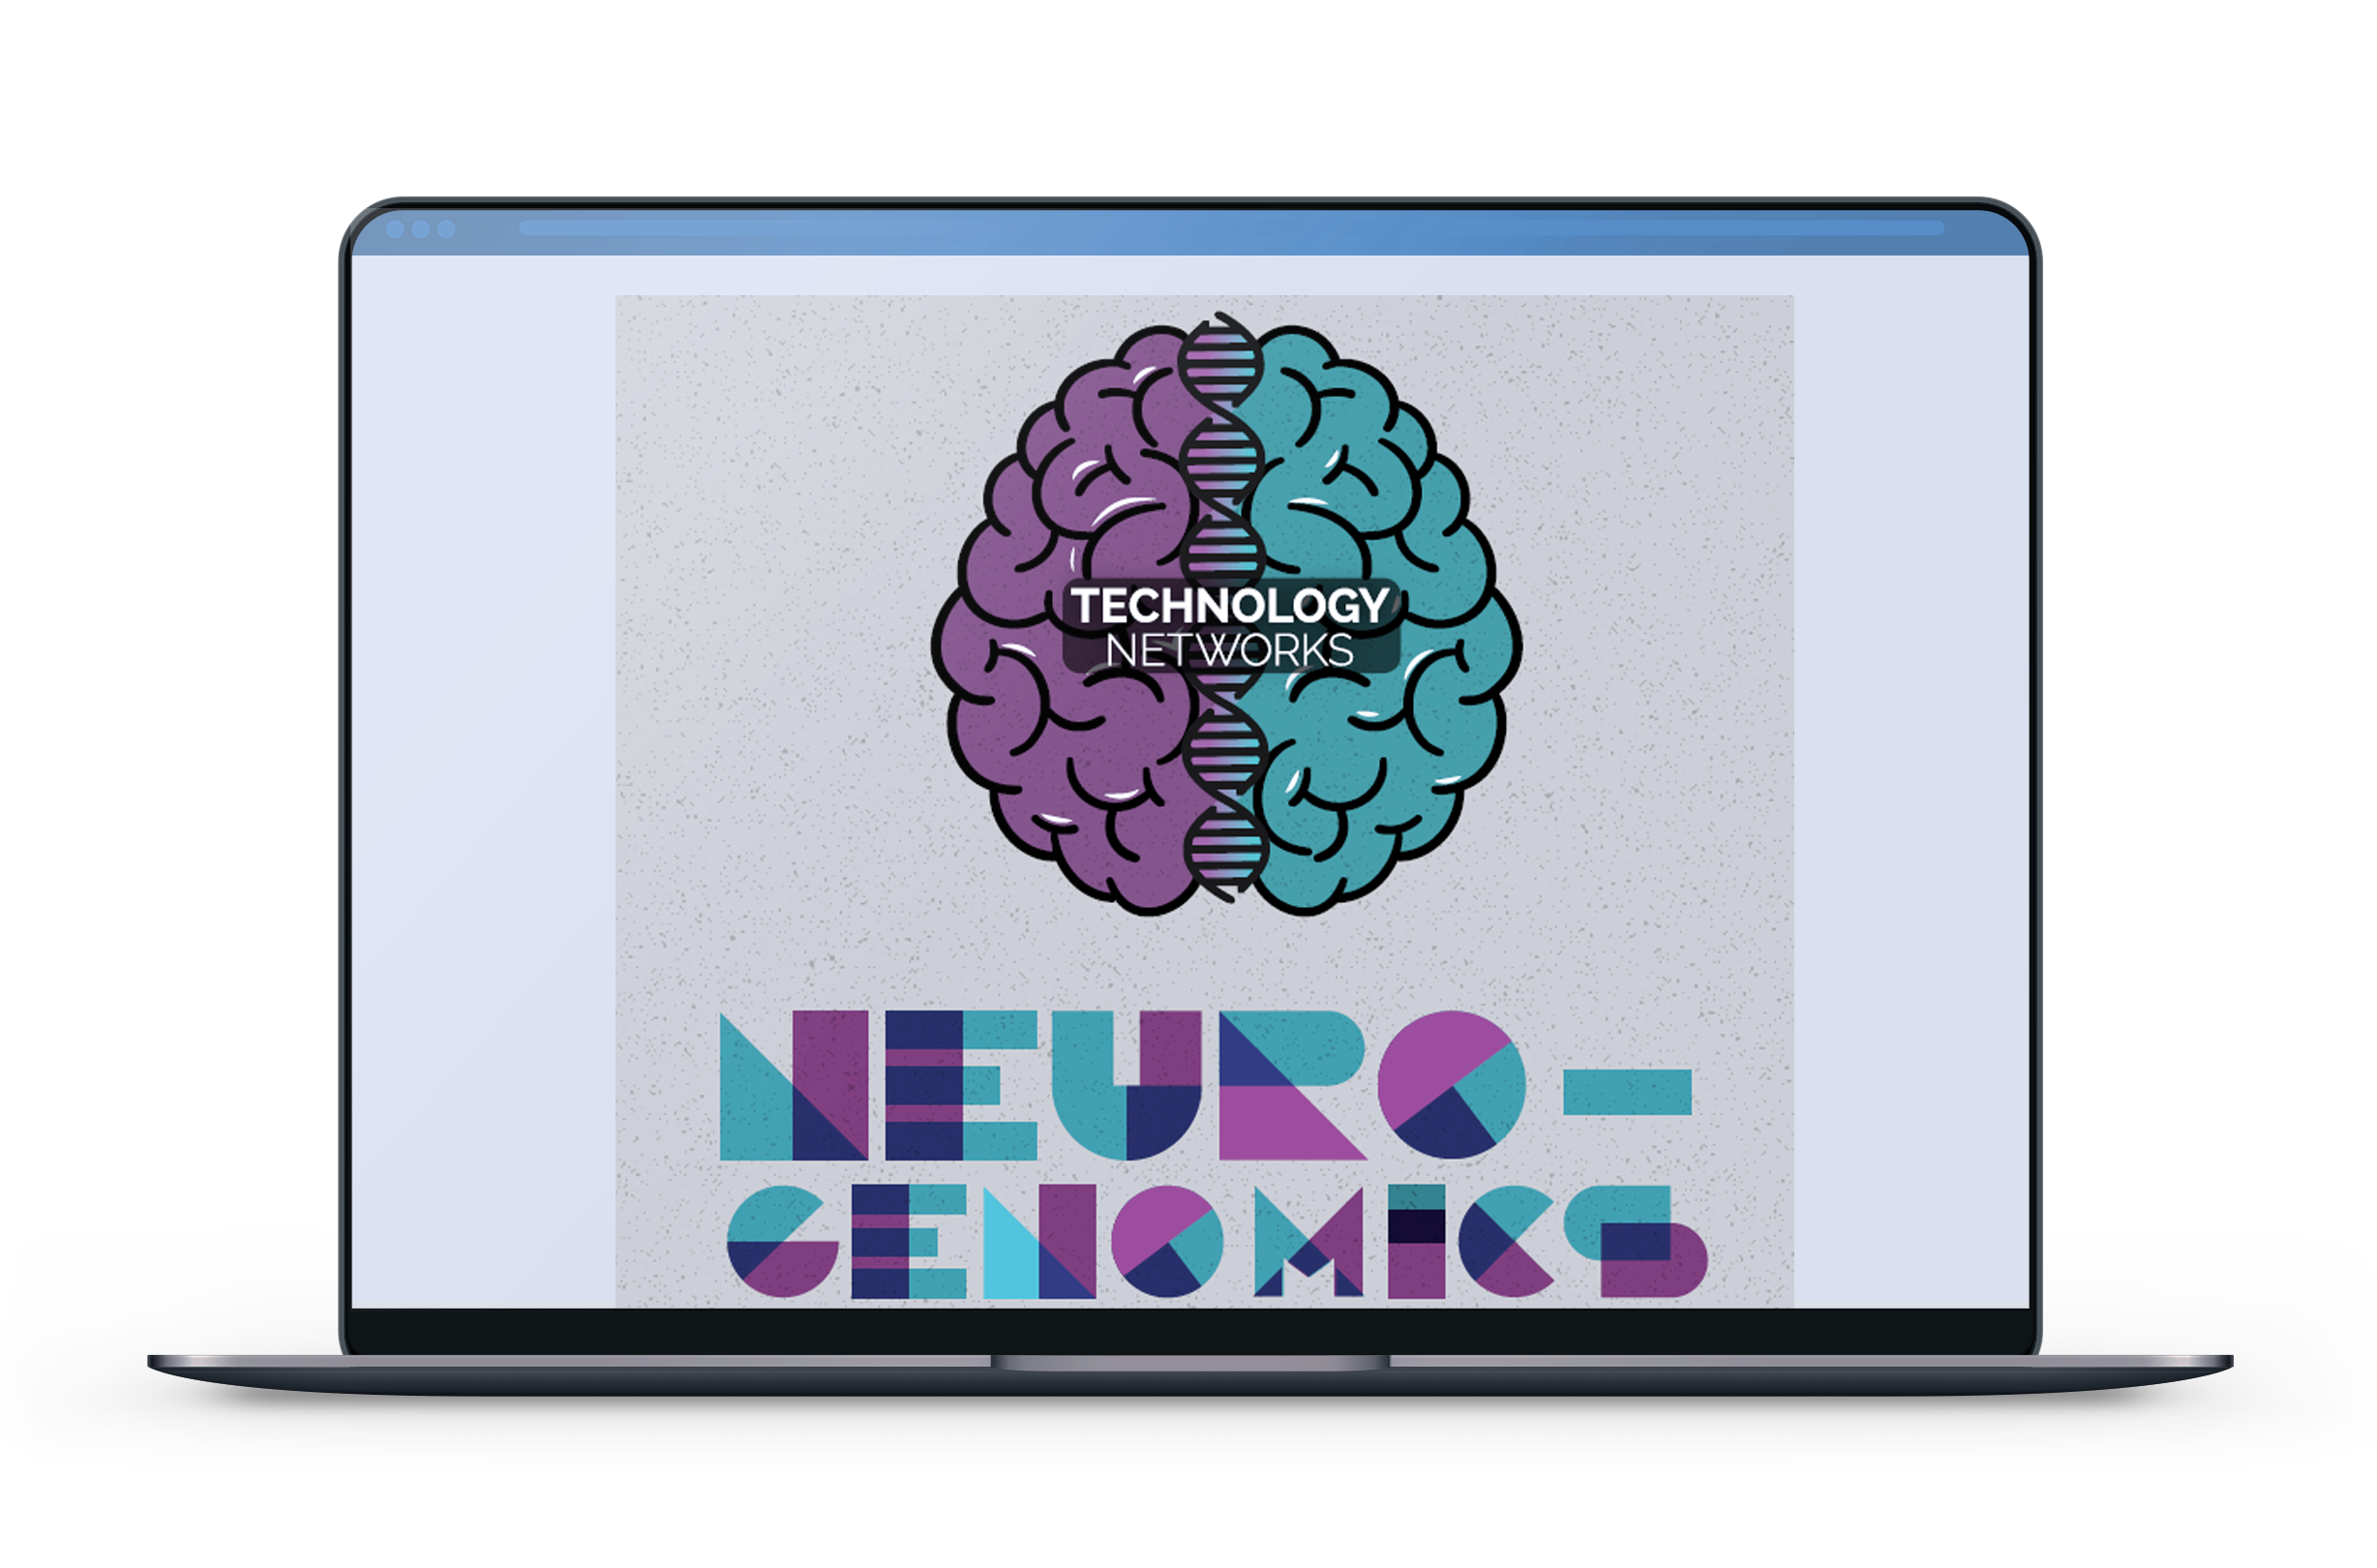 Neurogenomics